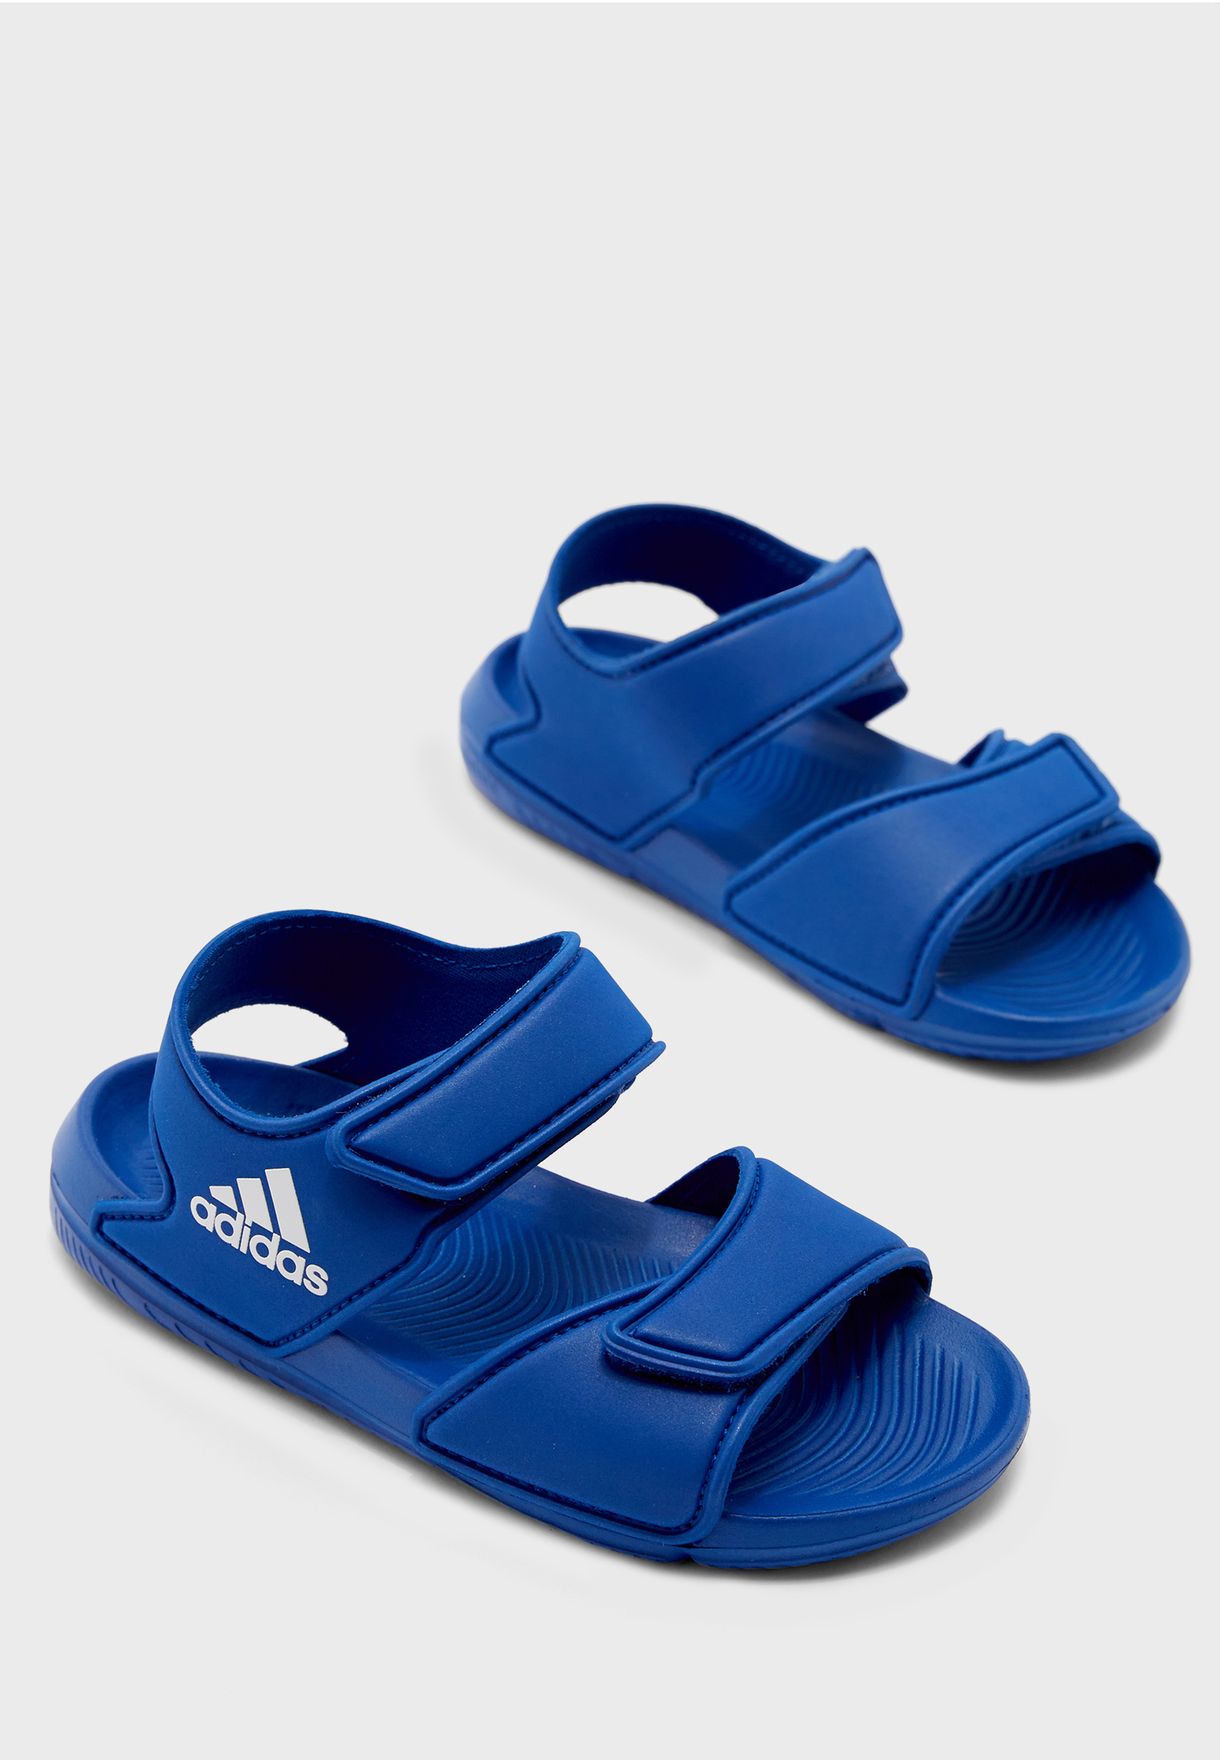 adidas altaswim junior sandals